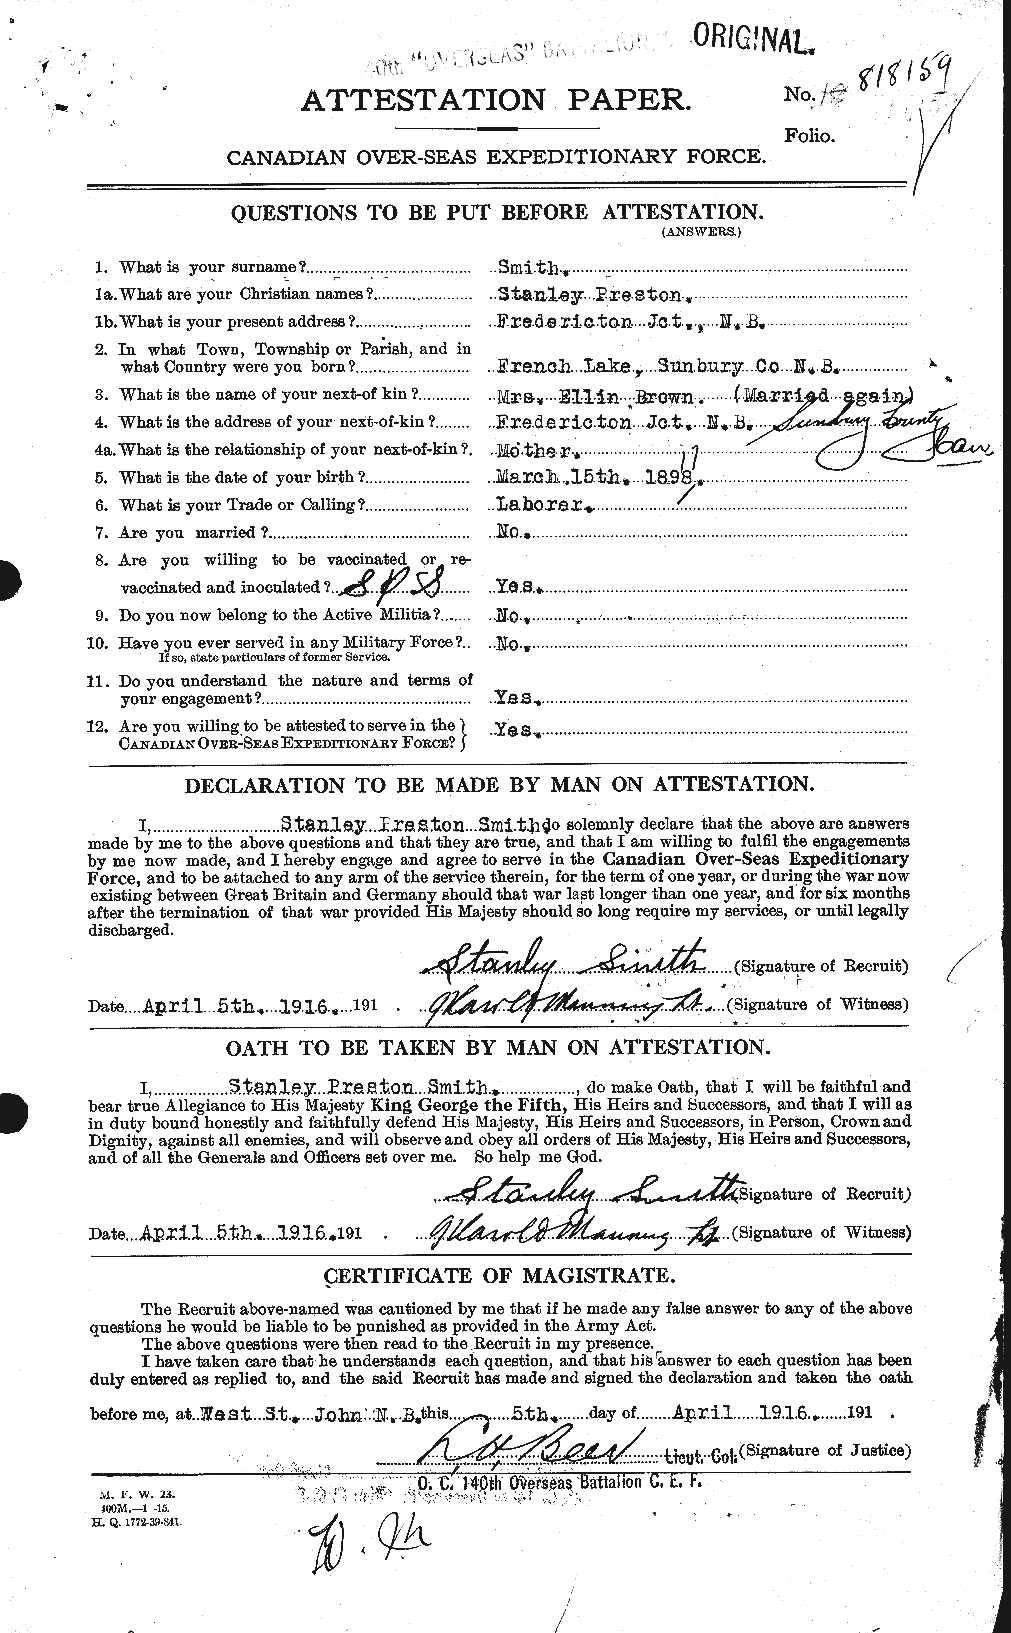 Dossiers du Personnel de la Première Guerre mondiale - CEC 107380a